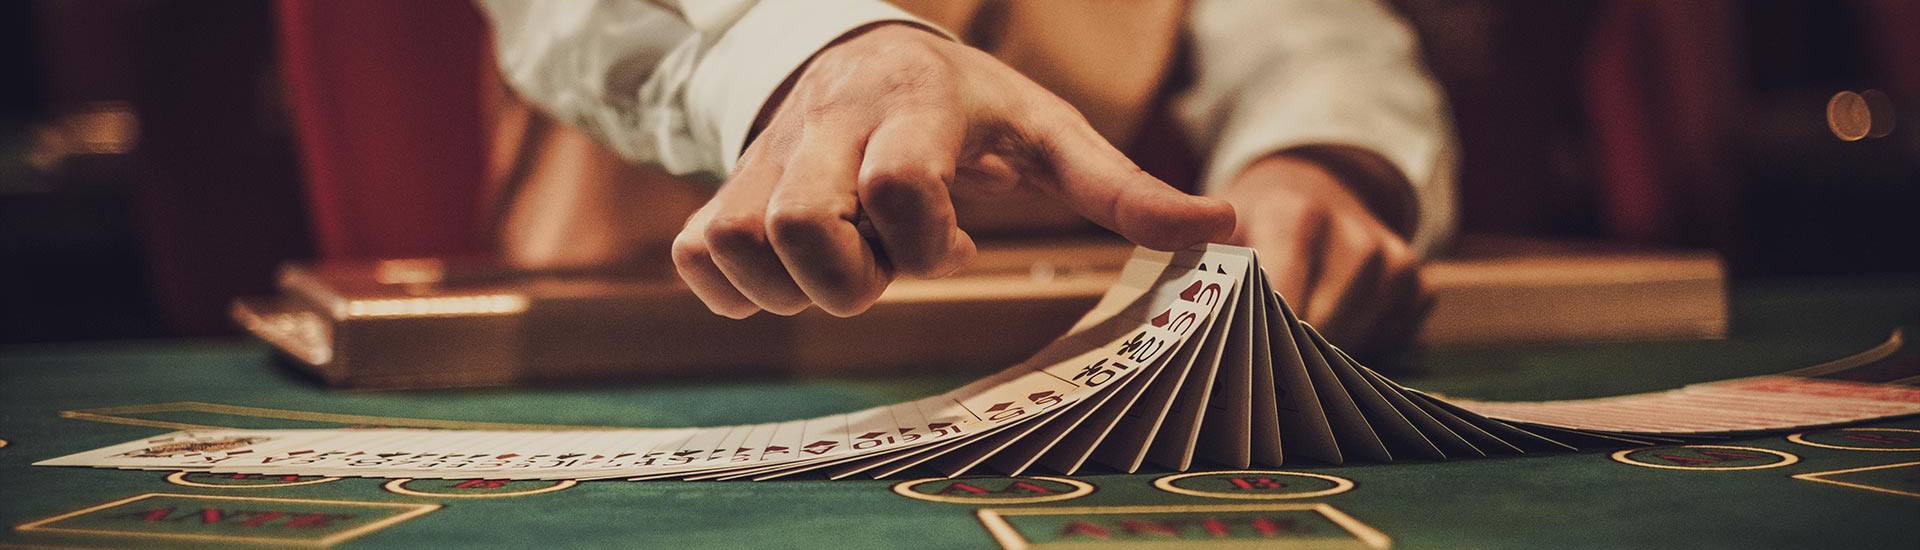 Gambling Tips to Win